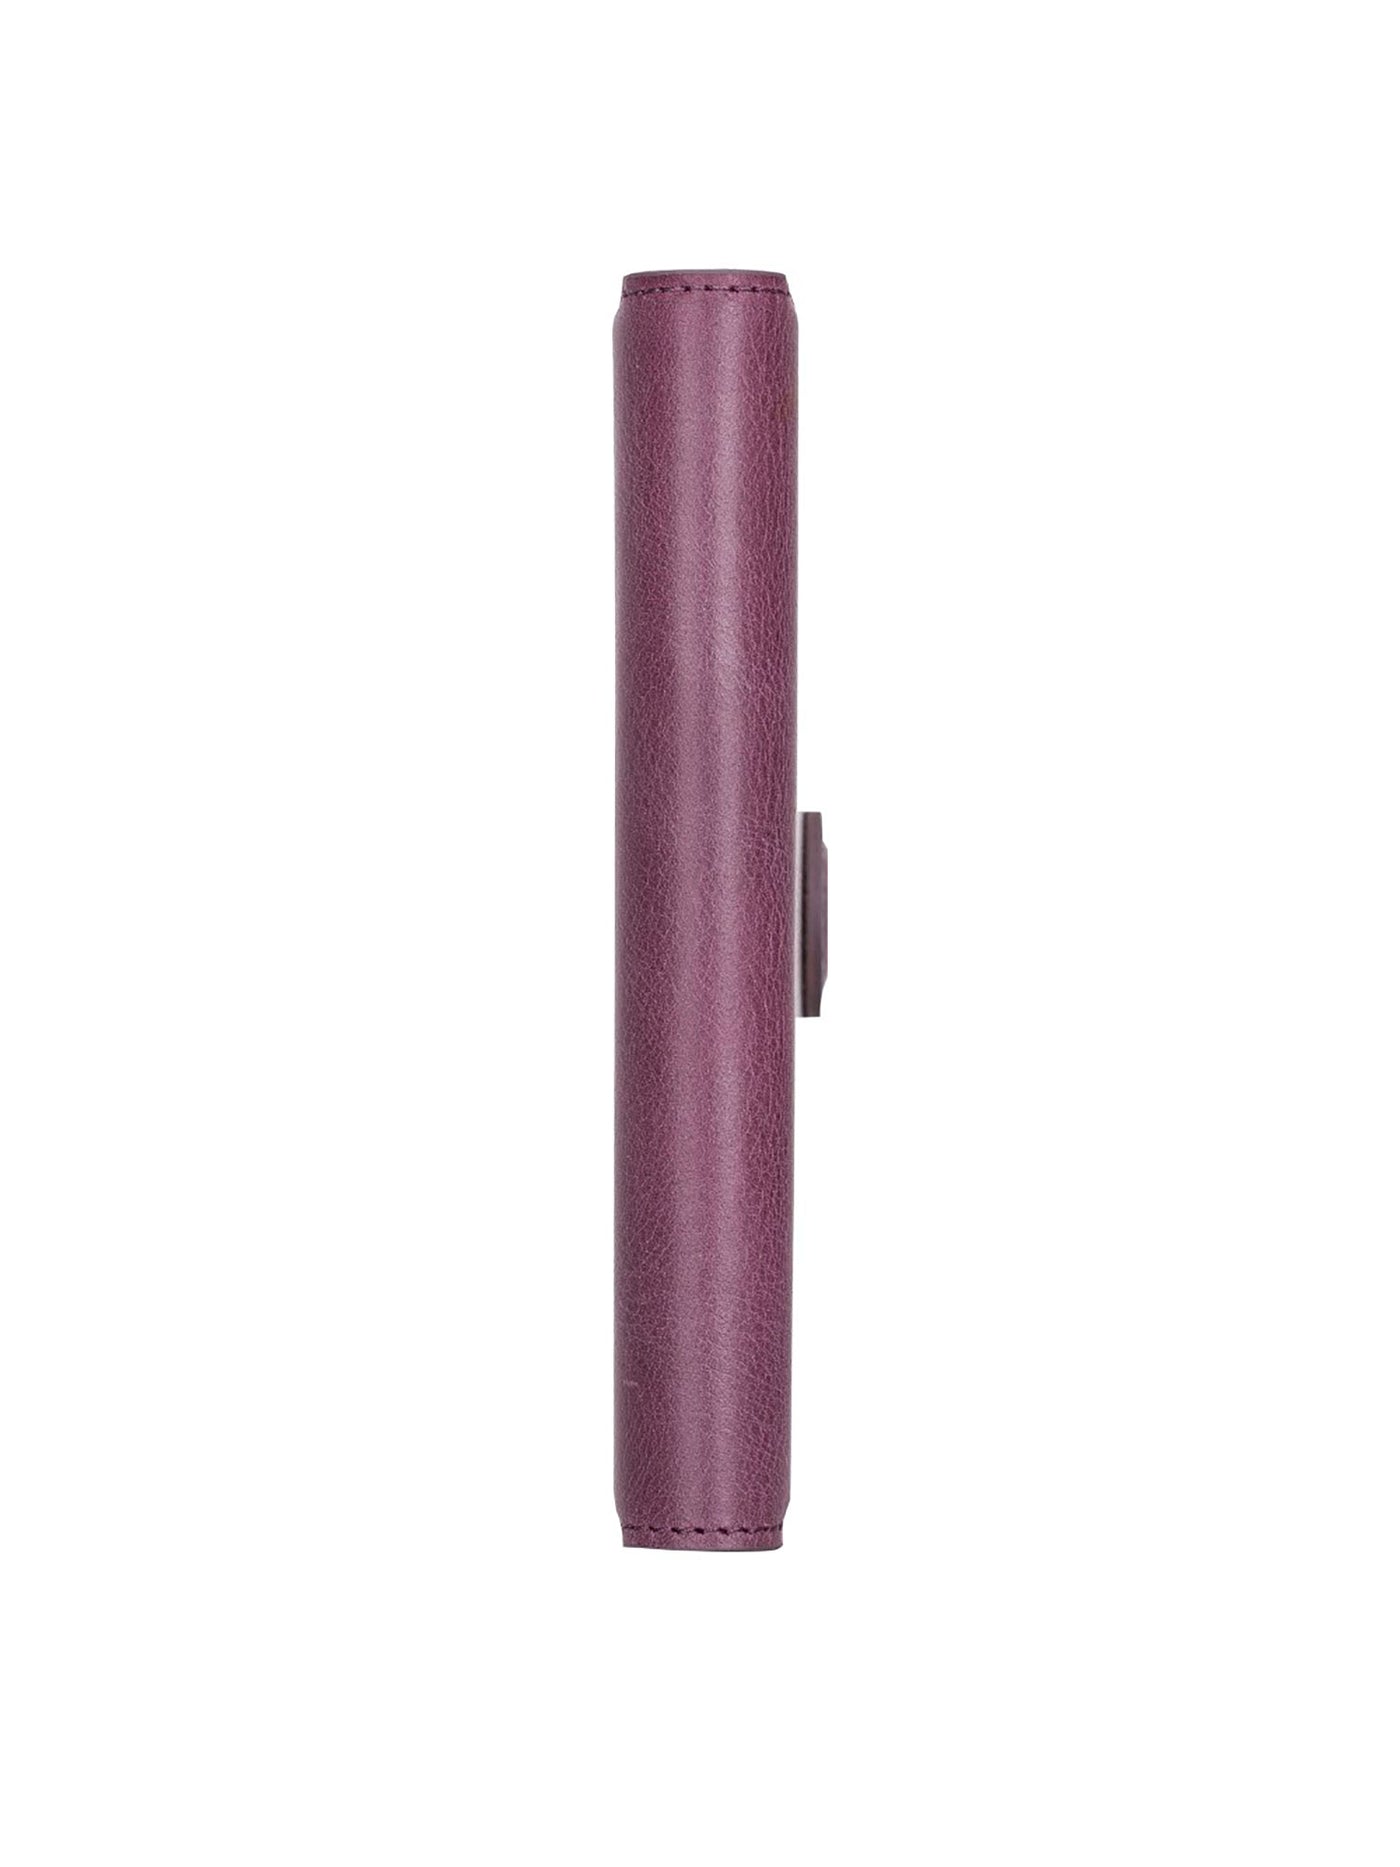 Plånboksfodral med avtagbart magnetskal i äkta läder för Apple iPhone 13 Bouletta Alpina- Lavendel-Lila #color_lavendel-lila